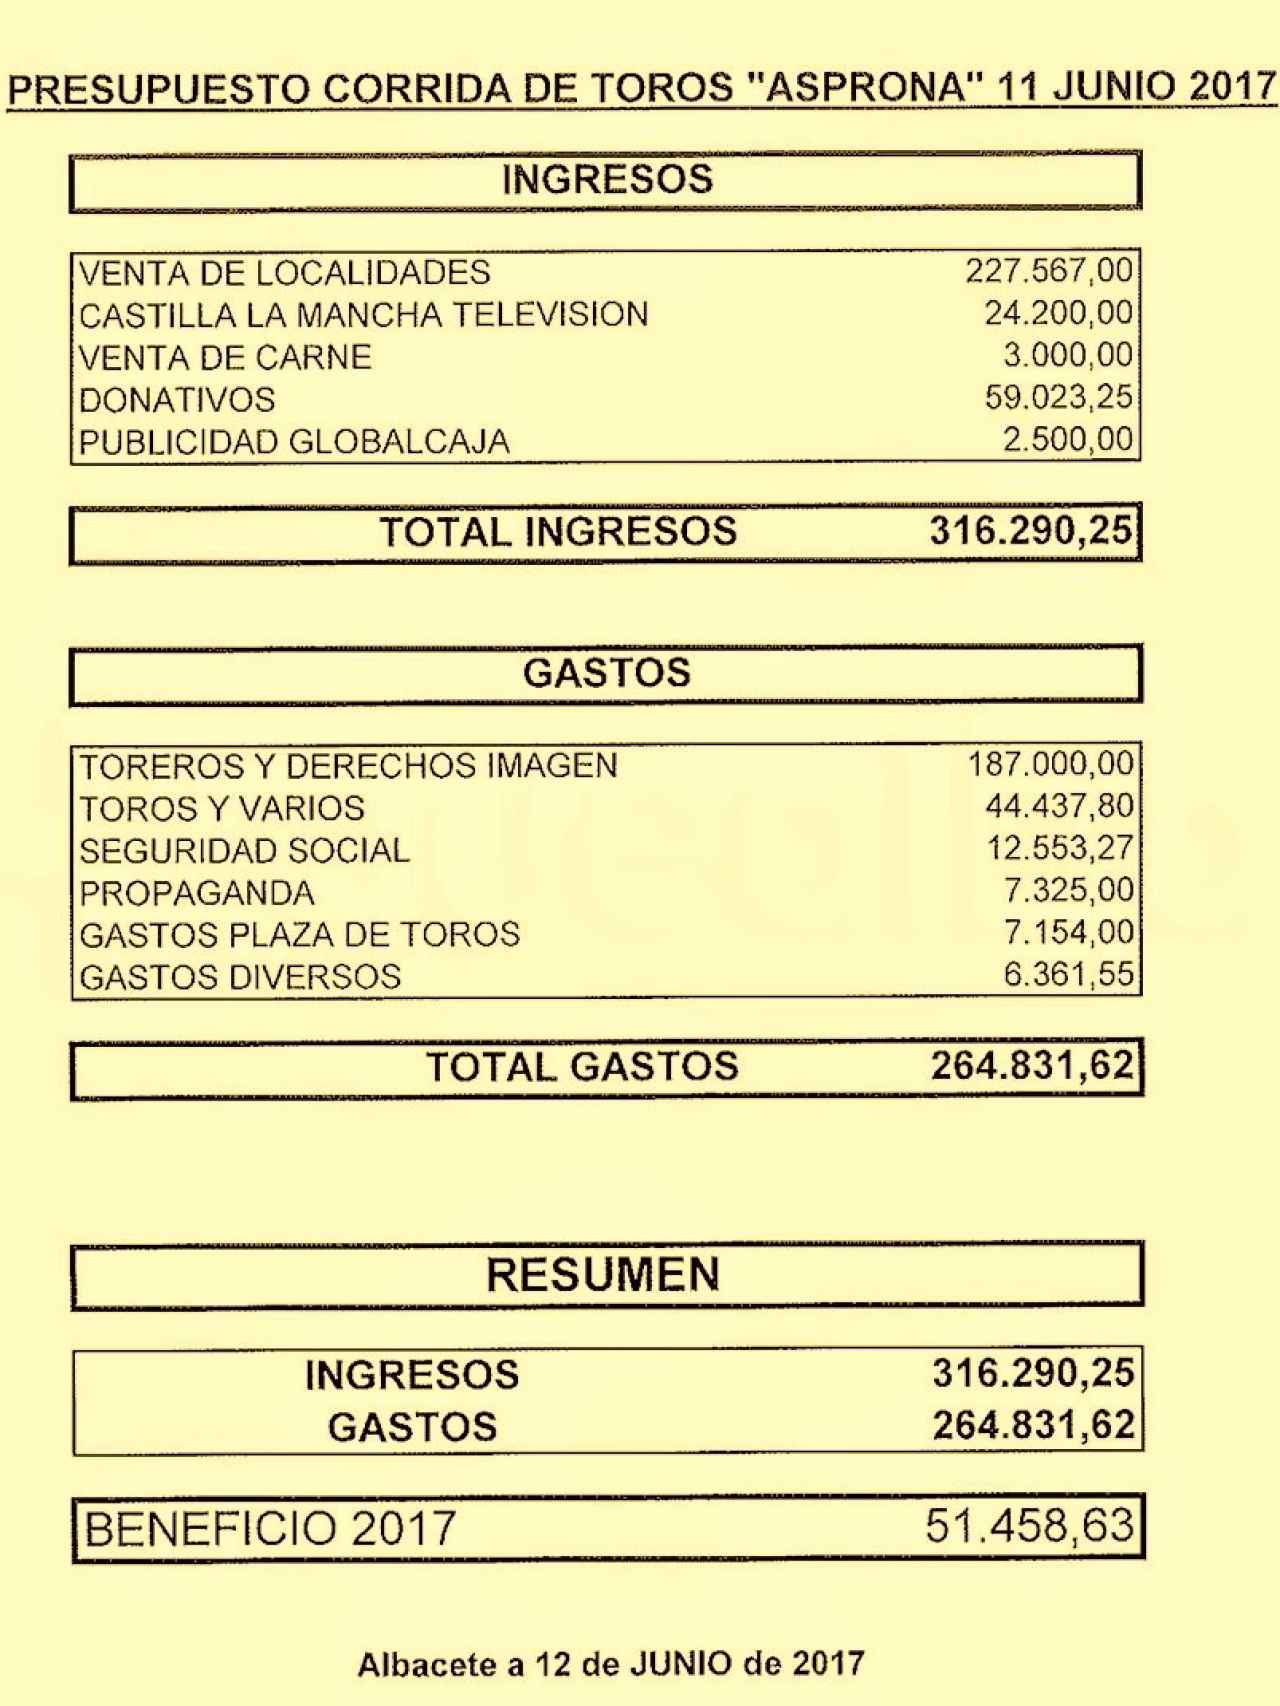 Cuentas oficiales de la corrida de toros de ASPRONA en 2017.